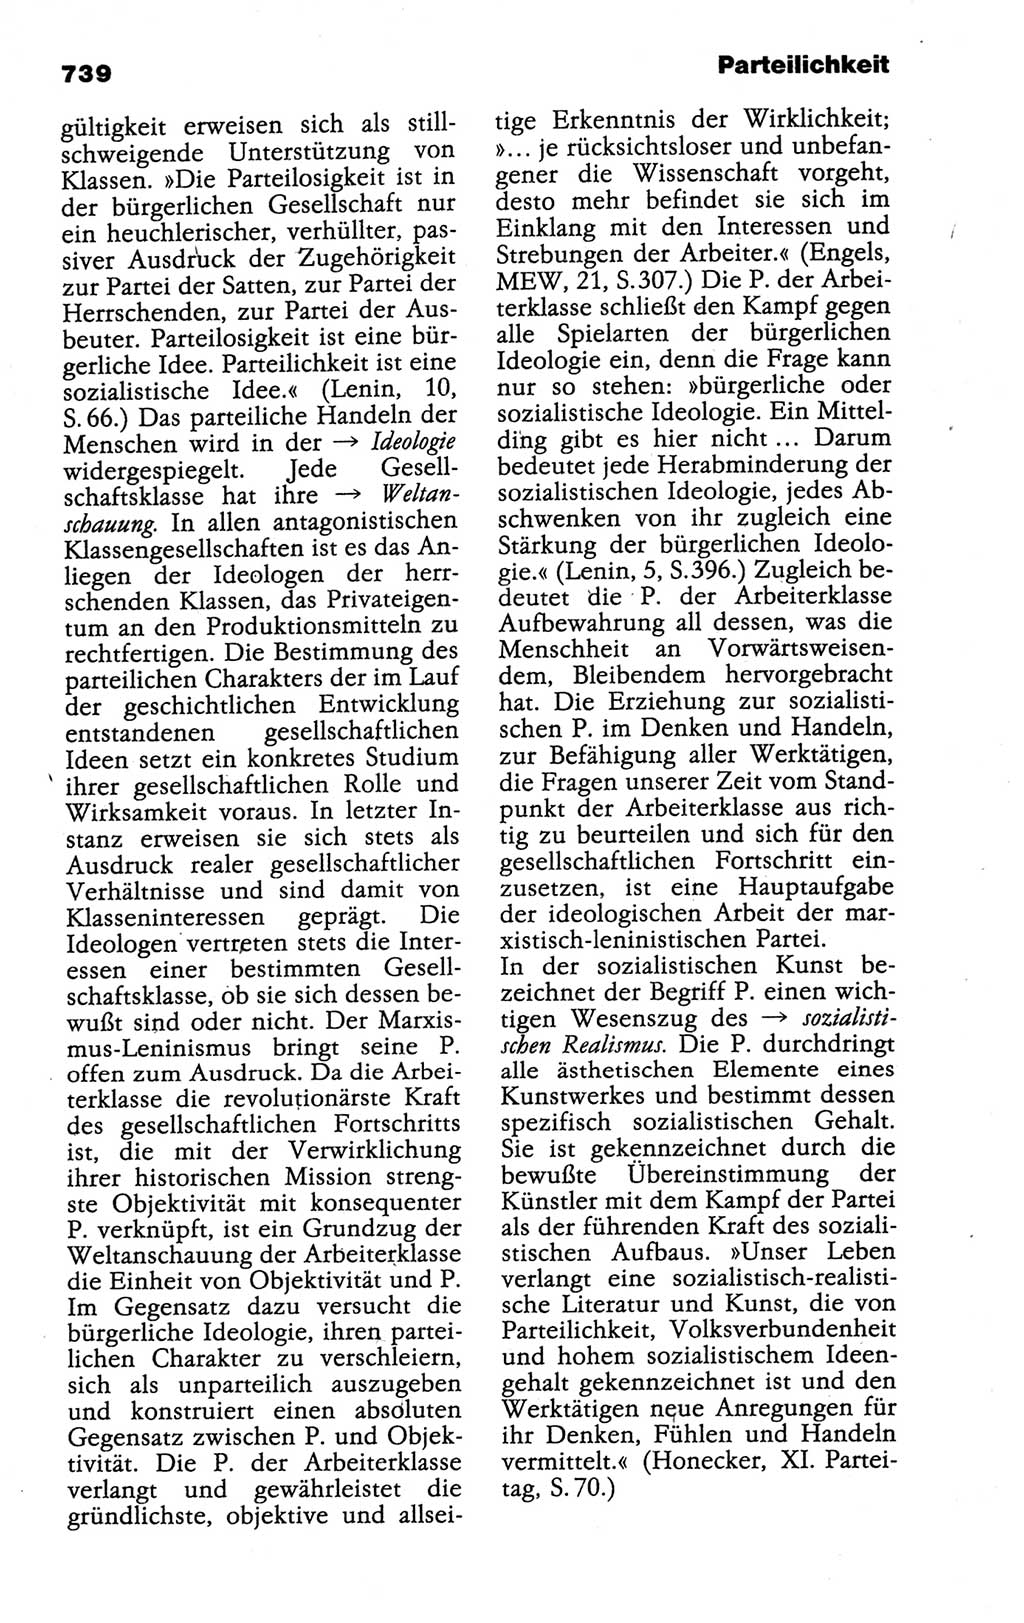 Kleines politisches Wörterbuch [Deutsche Demokratische Republik (DDR)] 1988, Seite 739 (Kl. pol. Wb. DDR 1988, S. 739)